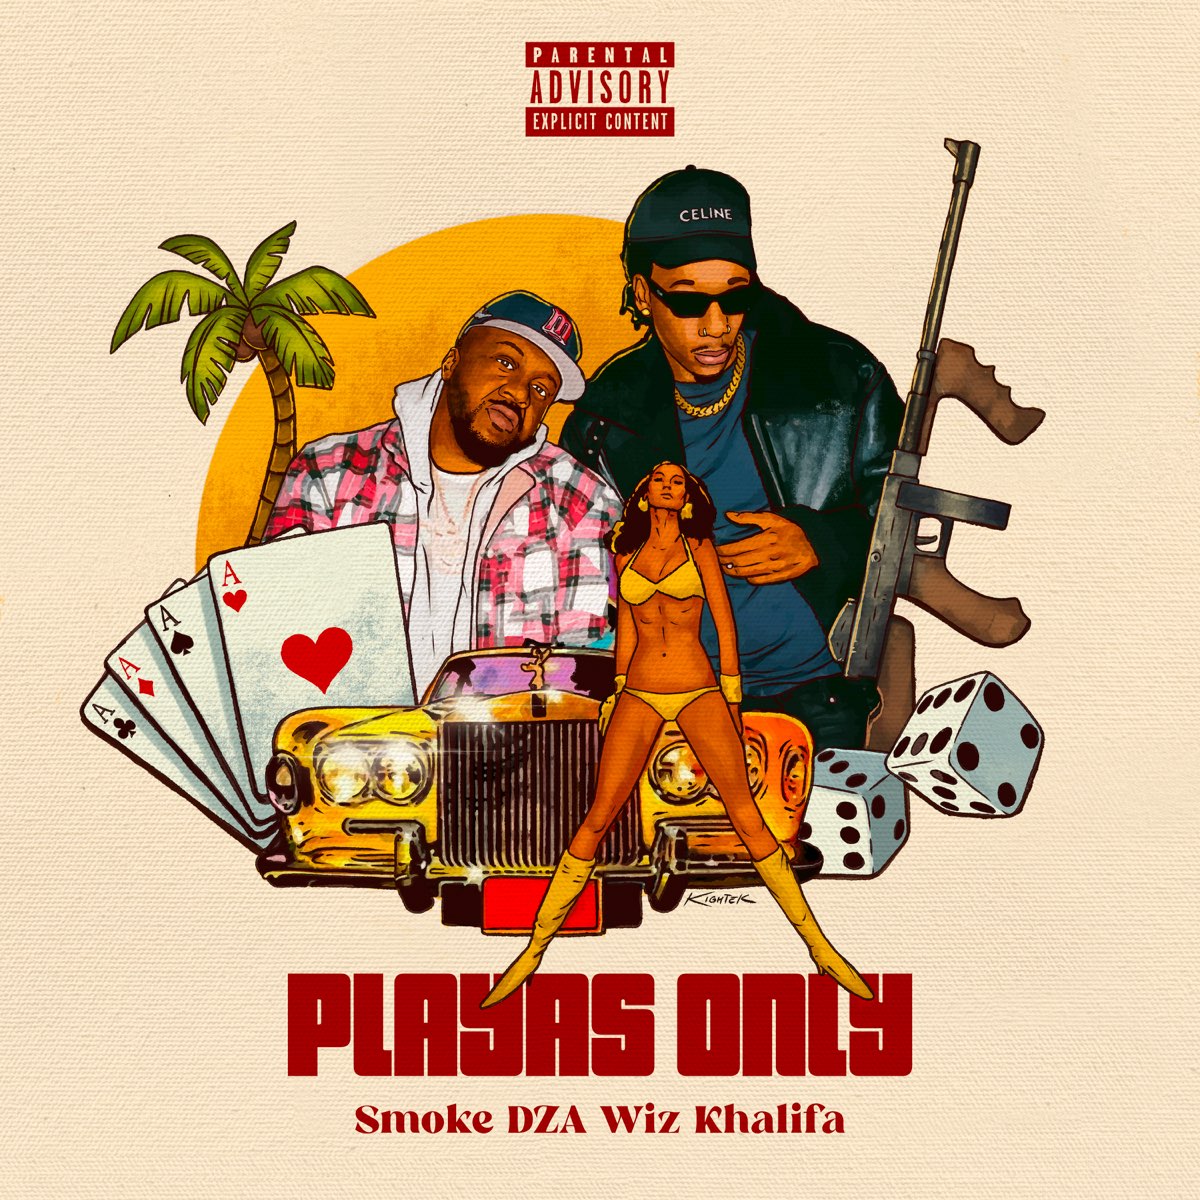 Playa's Only (feat. Wiz Khalifa) - Single by Smoke DZA & The Smokers Club  on Apple Music